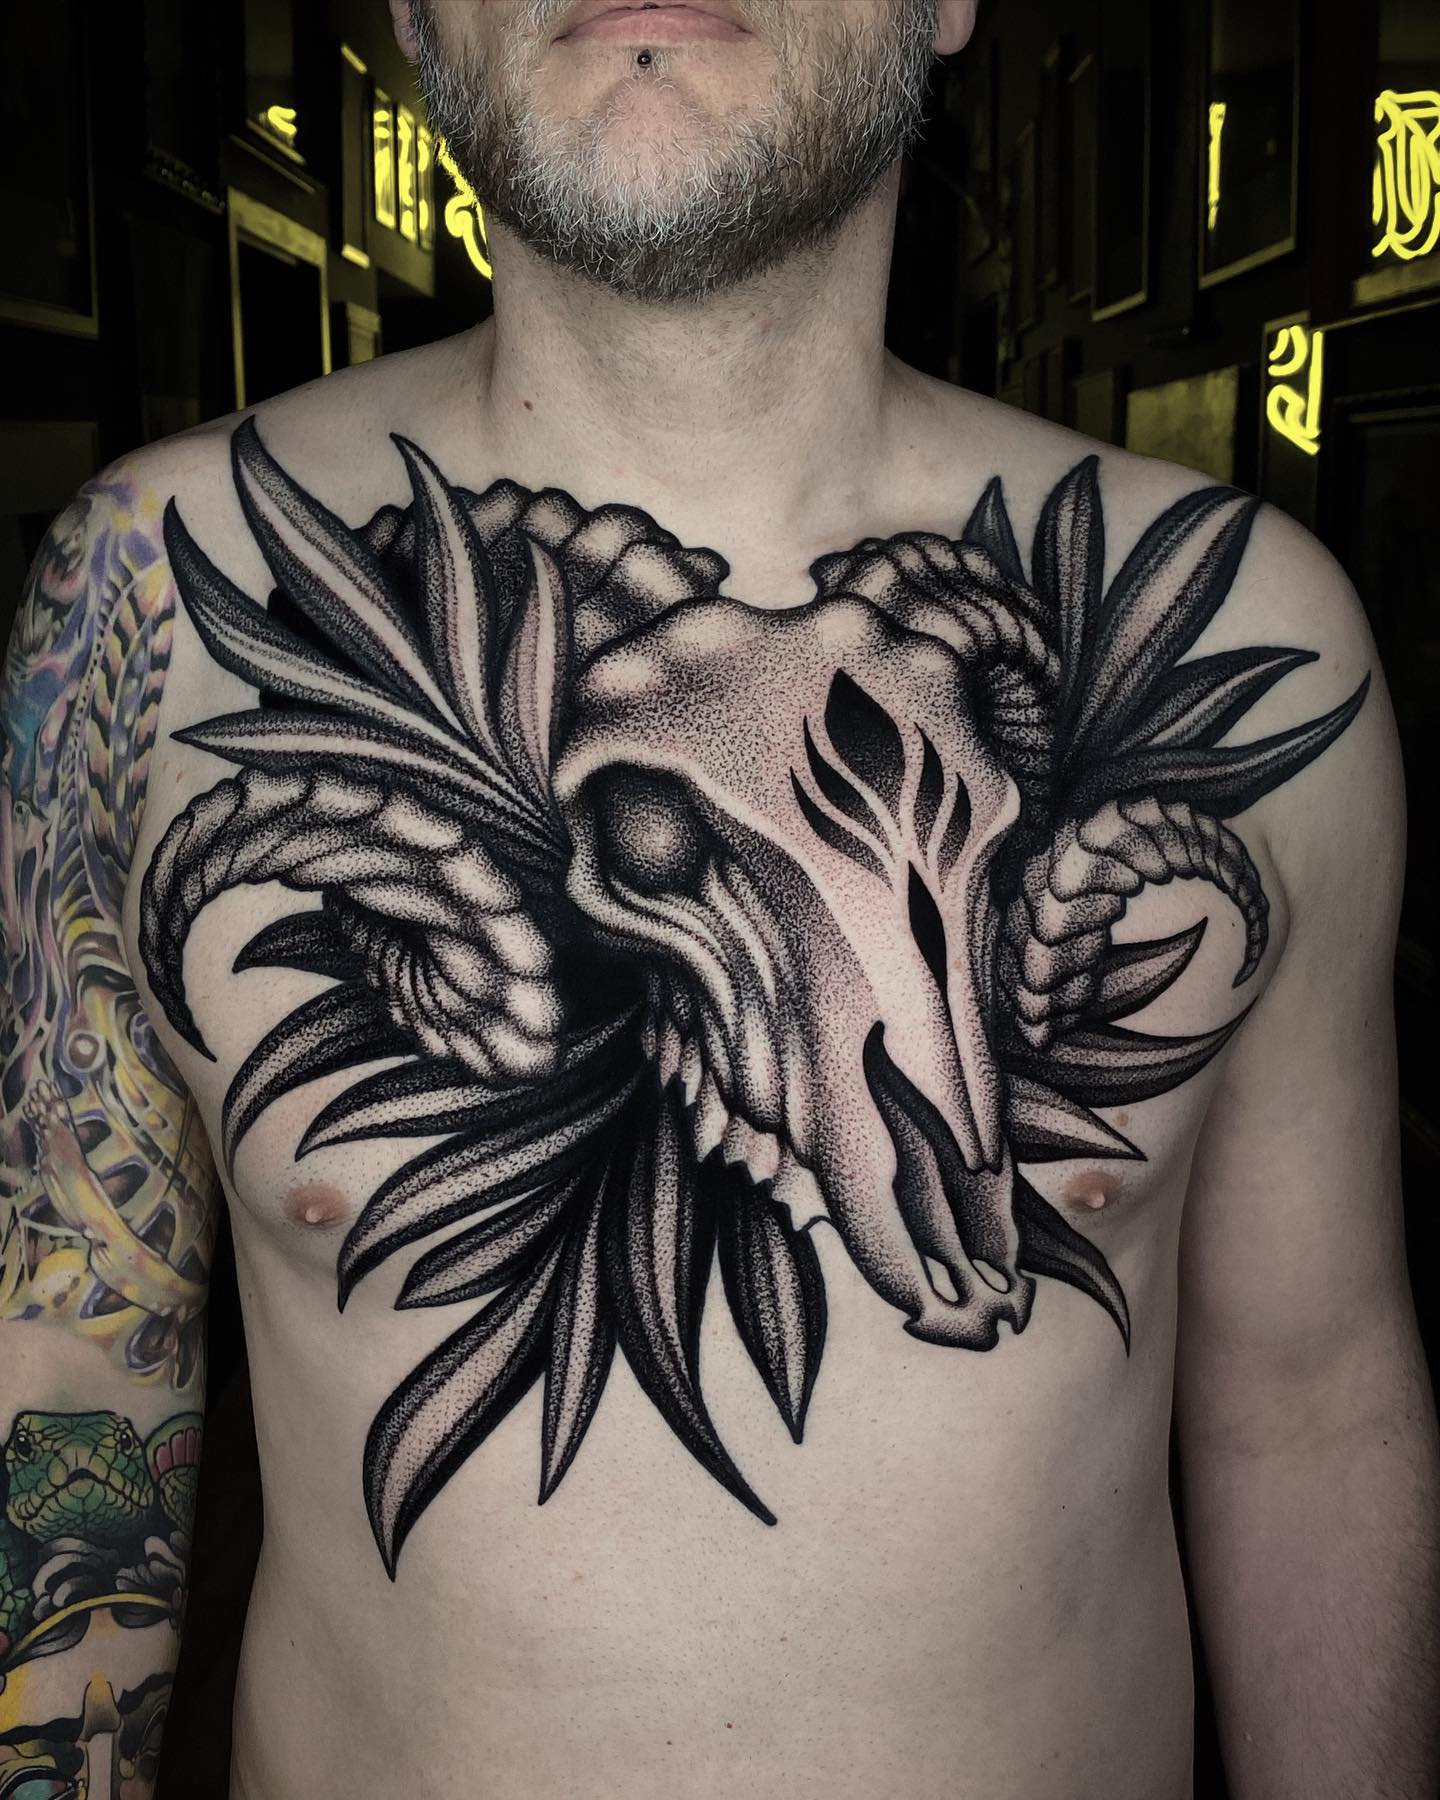 Tatuaż klatki piersiowej czaszki barana